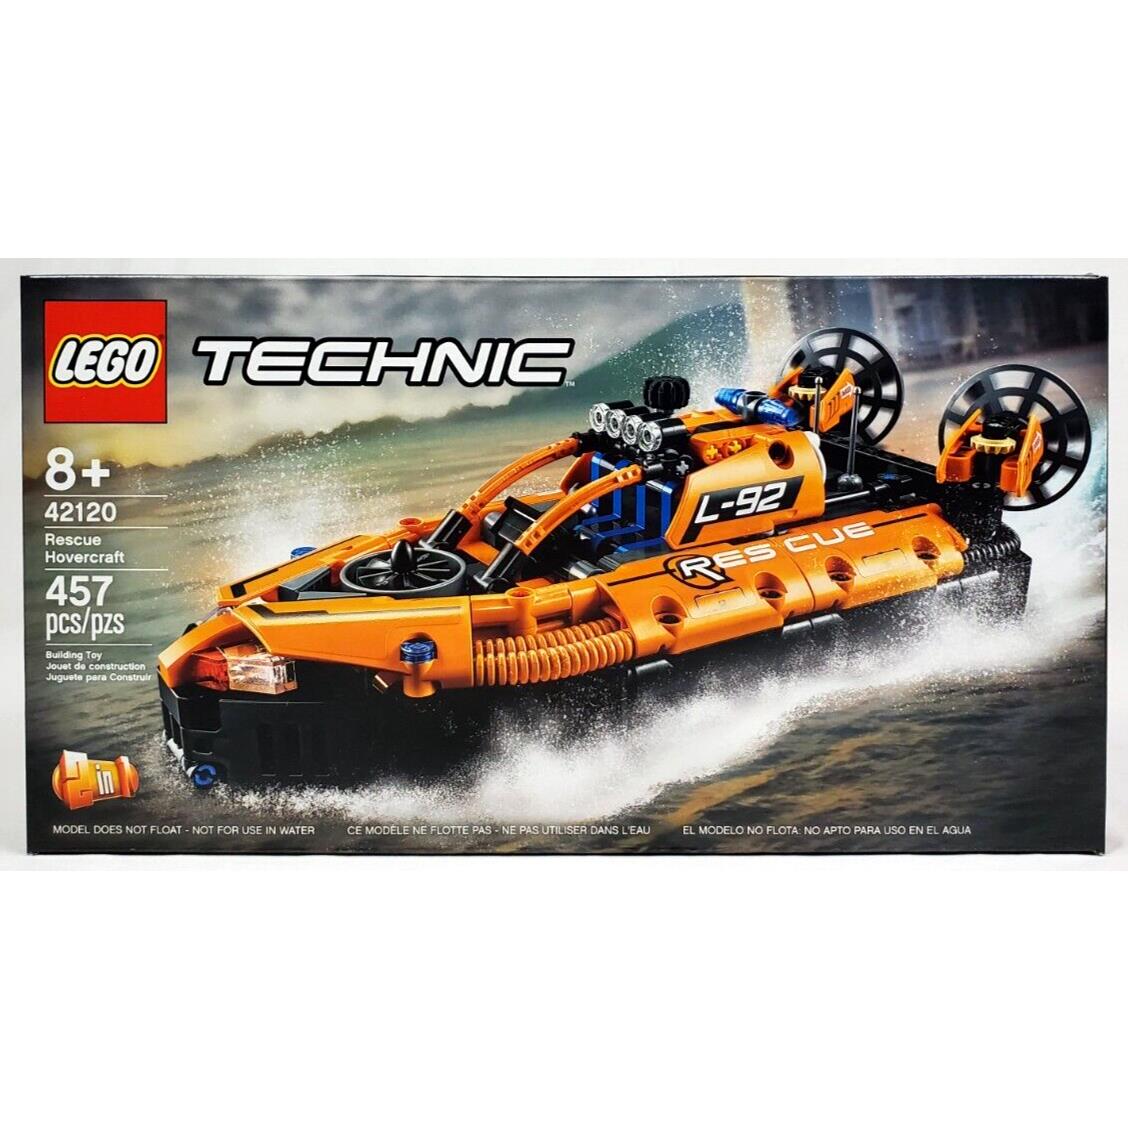 Lego Technic Set 42120 Rescue Hovercraft Ships Free